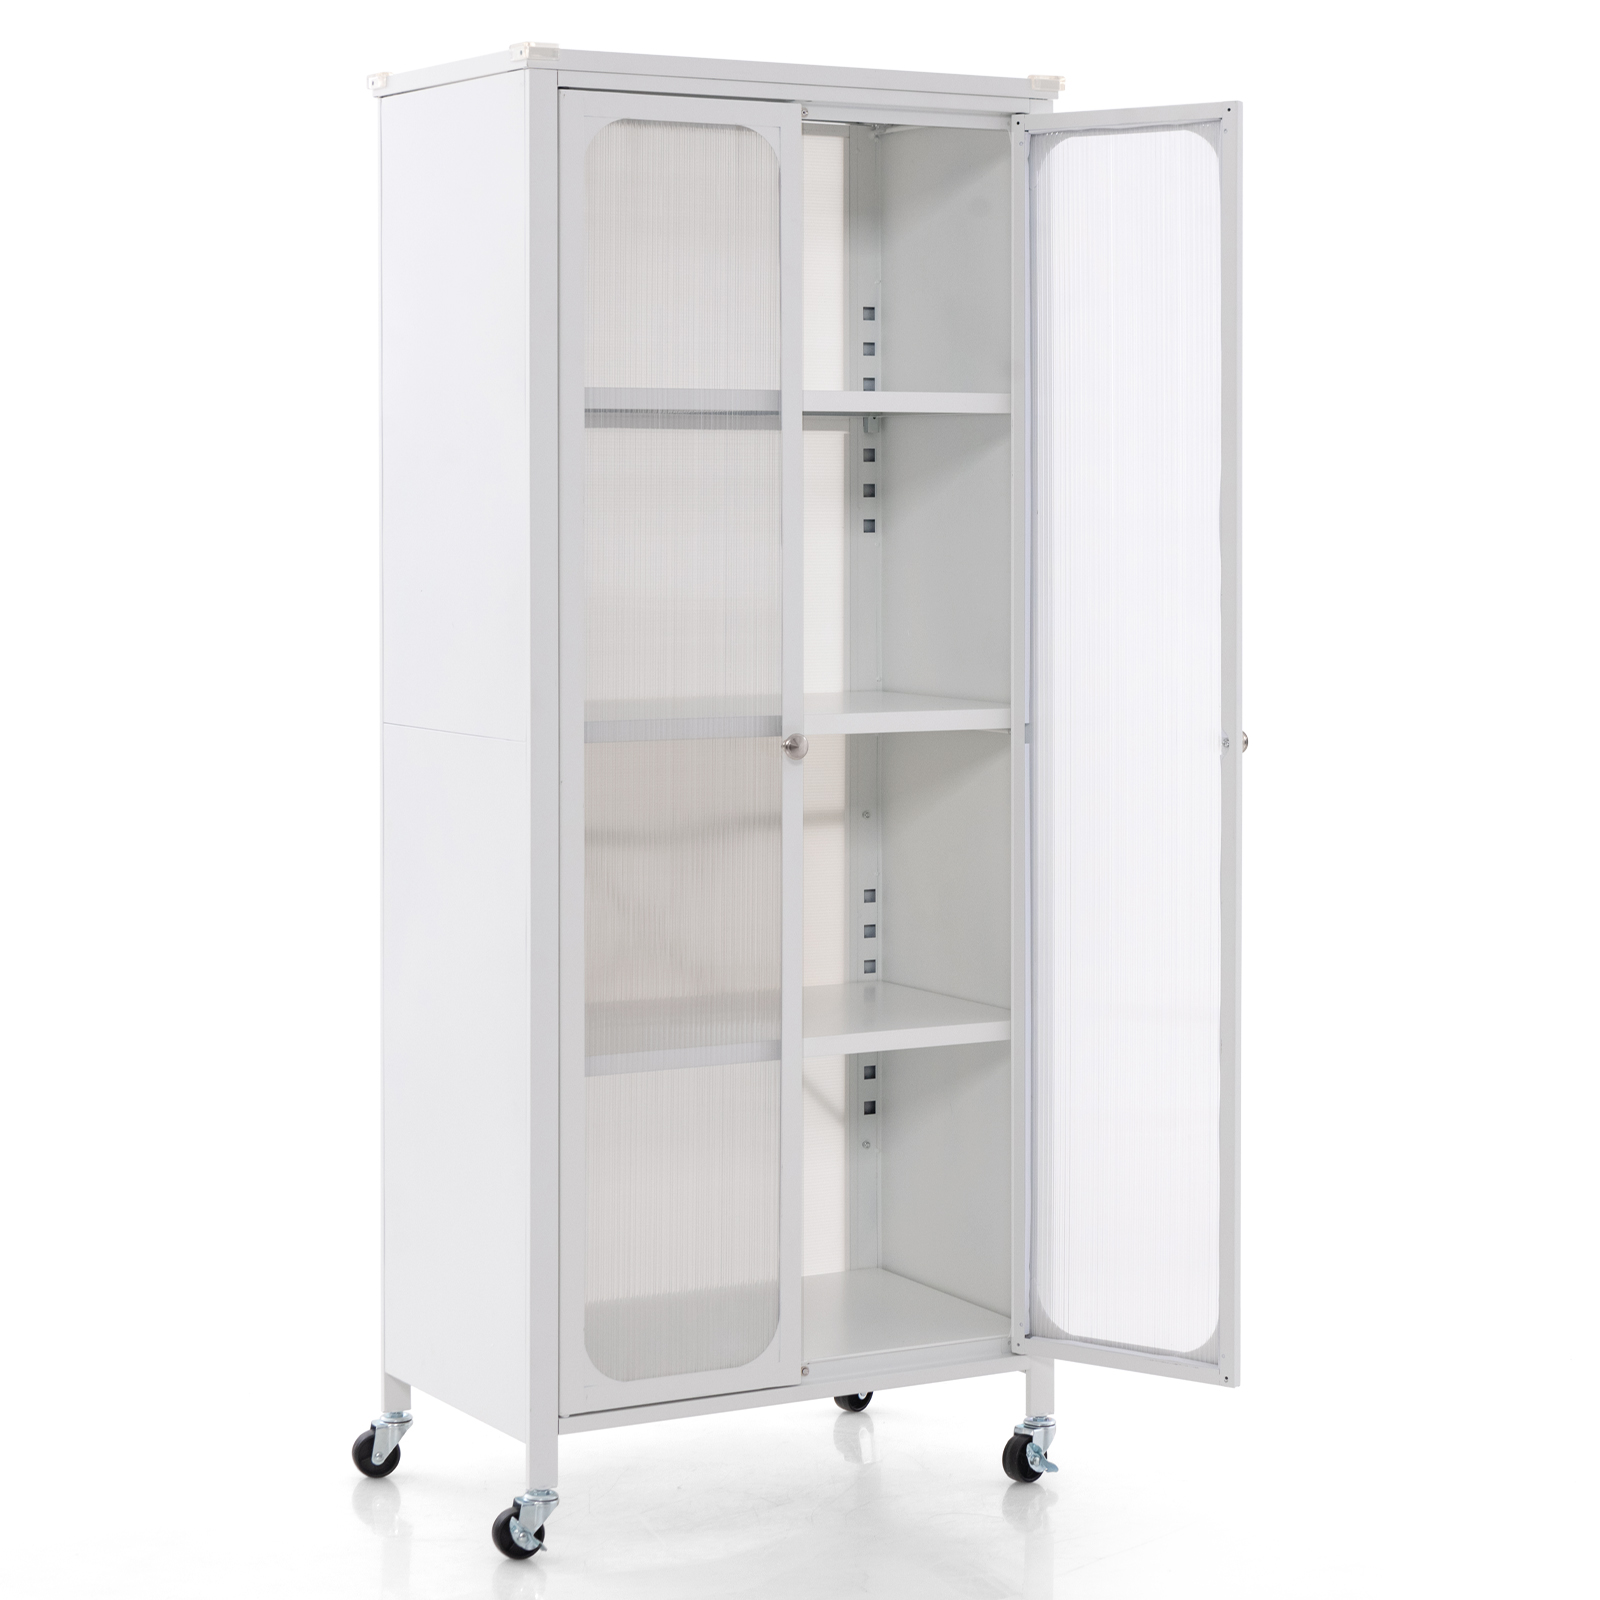 Mobile_2_Doors_Food_Pantry_Cupboard_Storage_Cabinet_with_Wheels-3.jpg